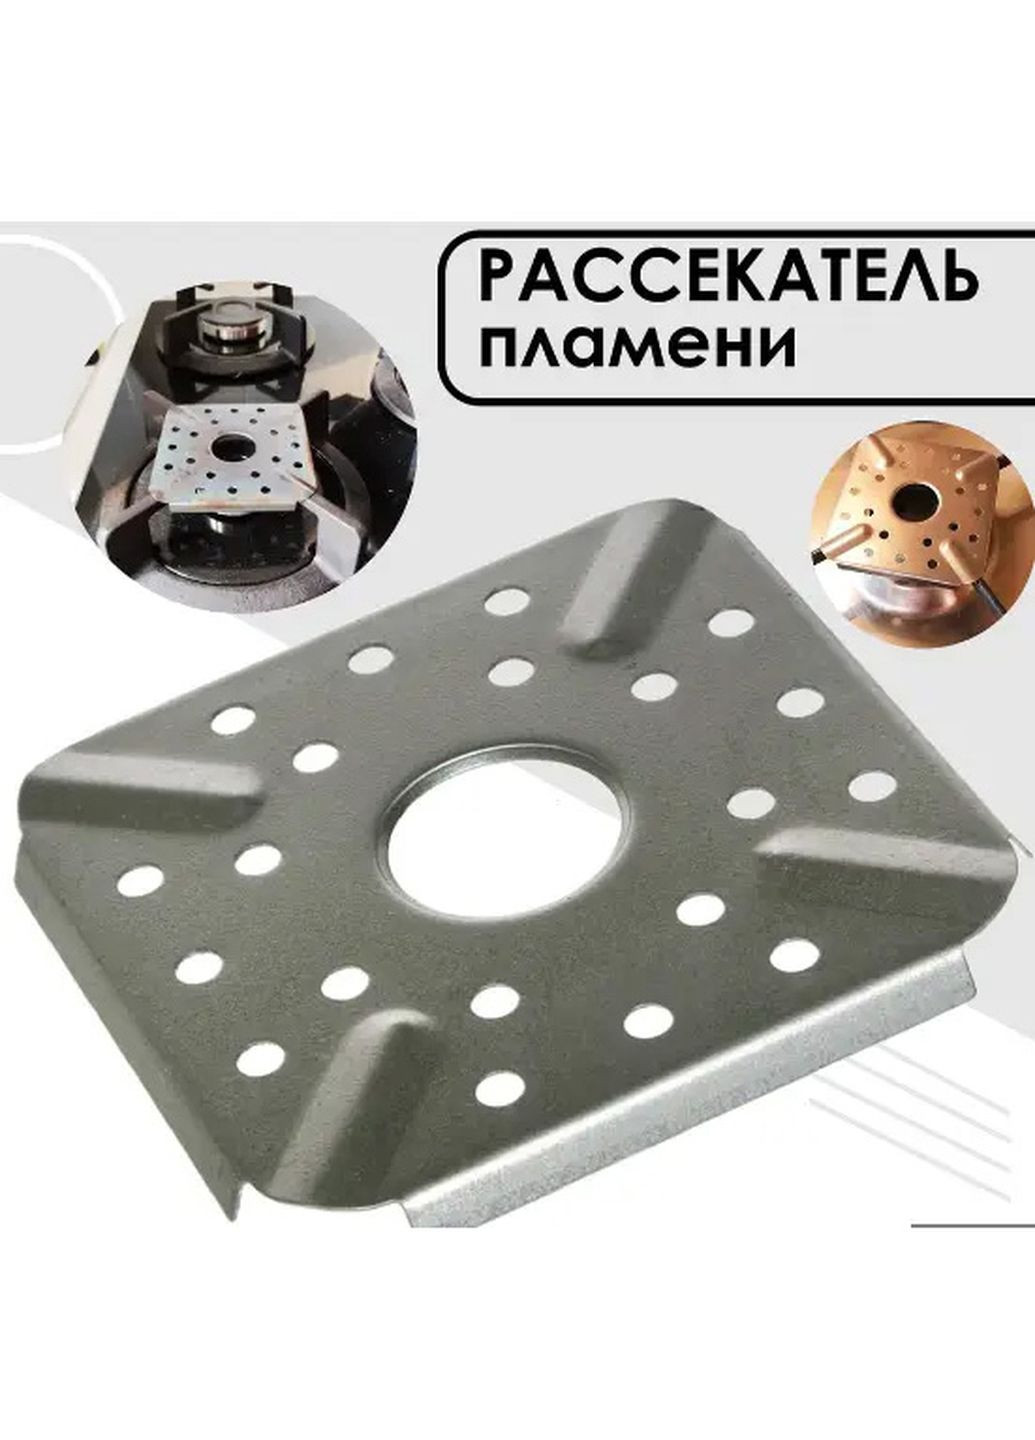 Вогнетривкий розсікач полум'я 9.3x9.3 см сталевий для адаптації конфорки під посуд з маленьким дном LY (267145281)